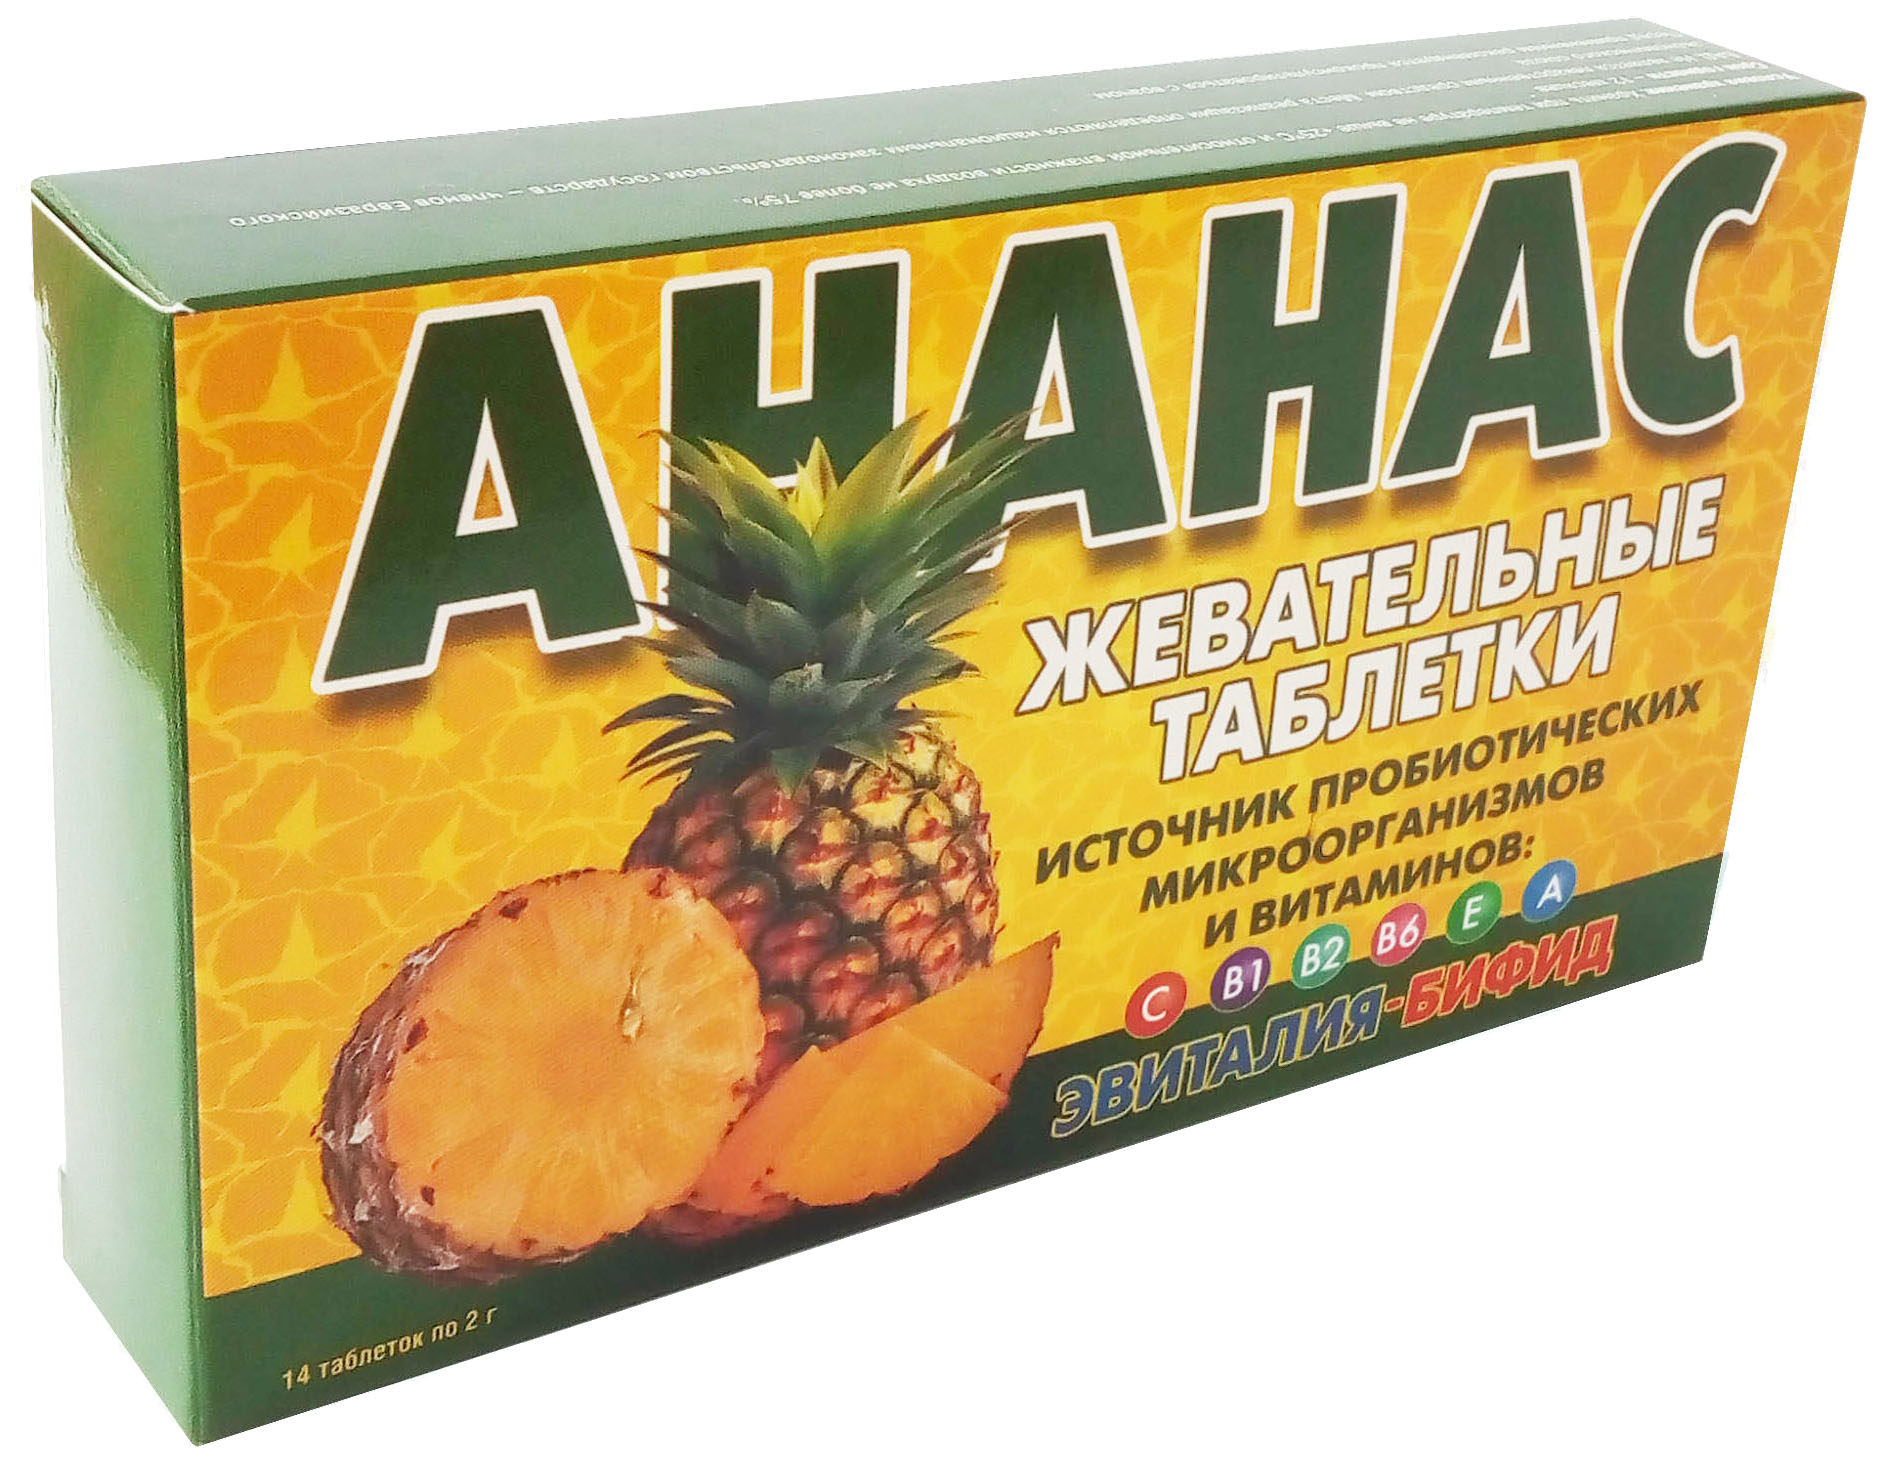 Купить Бифид-Эвиталия с соком ананаса таблетки жевательные 14 шт., В-МИН+